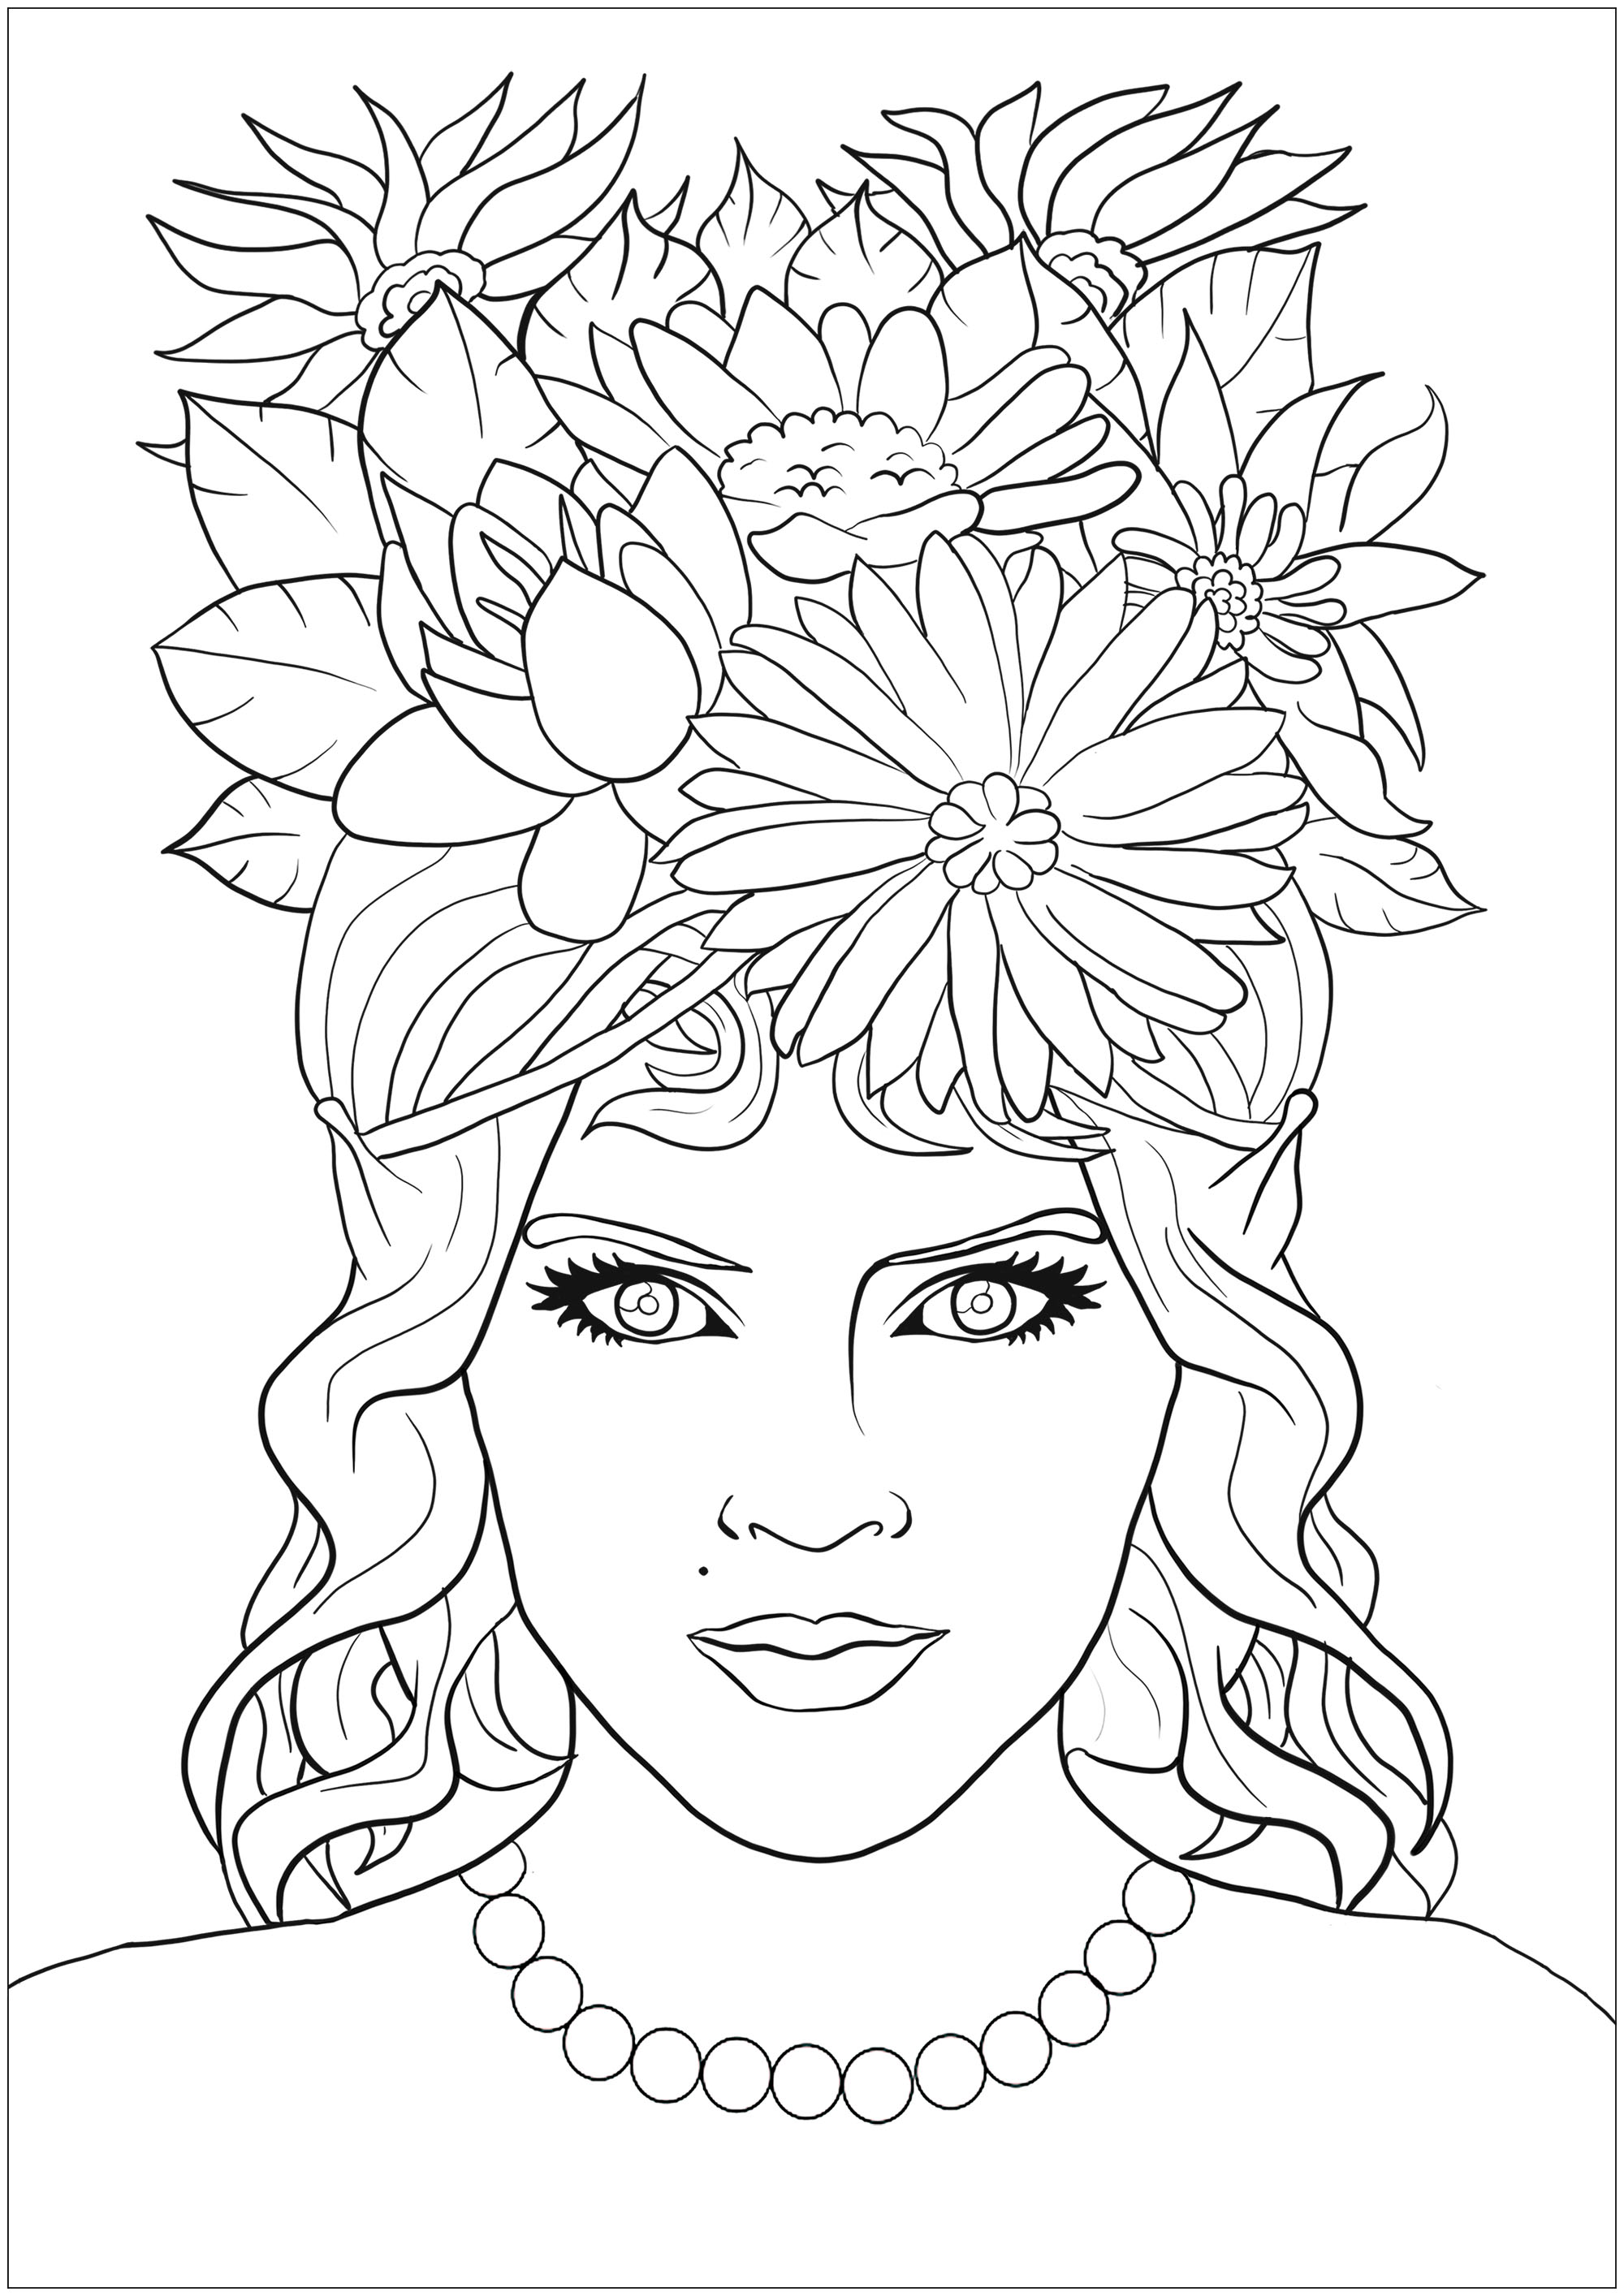 Schöne Fantasy-Elfe Frau mit hypnotischem Blick, mit Haar voller Blumen